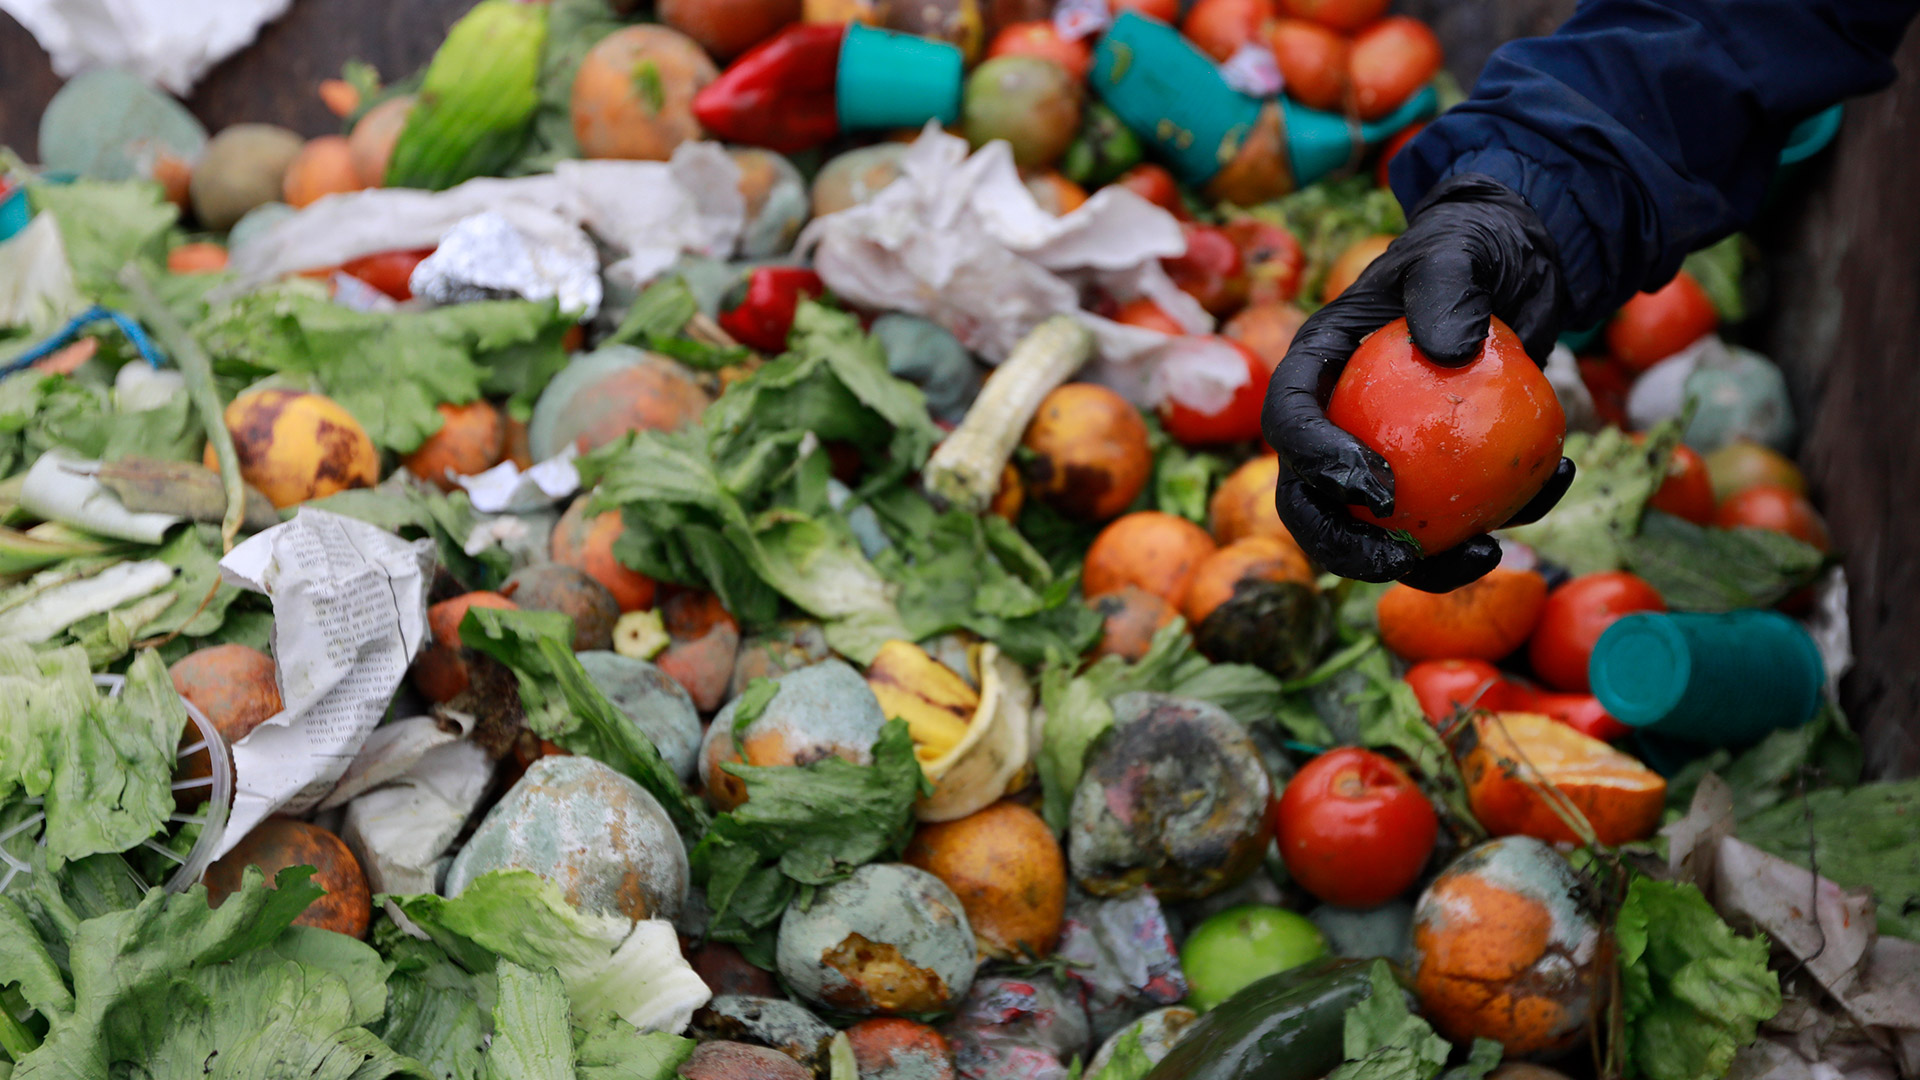 Desperdicio de alimentos: el 40% de la comida termina en la basura - Infobae